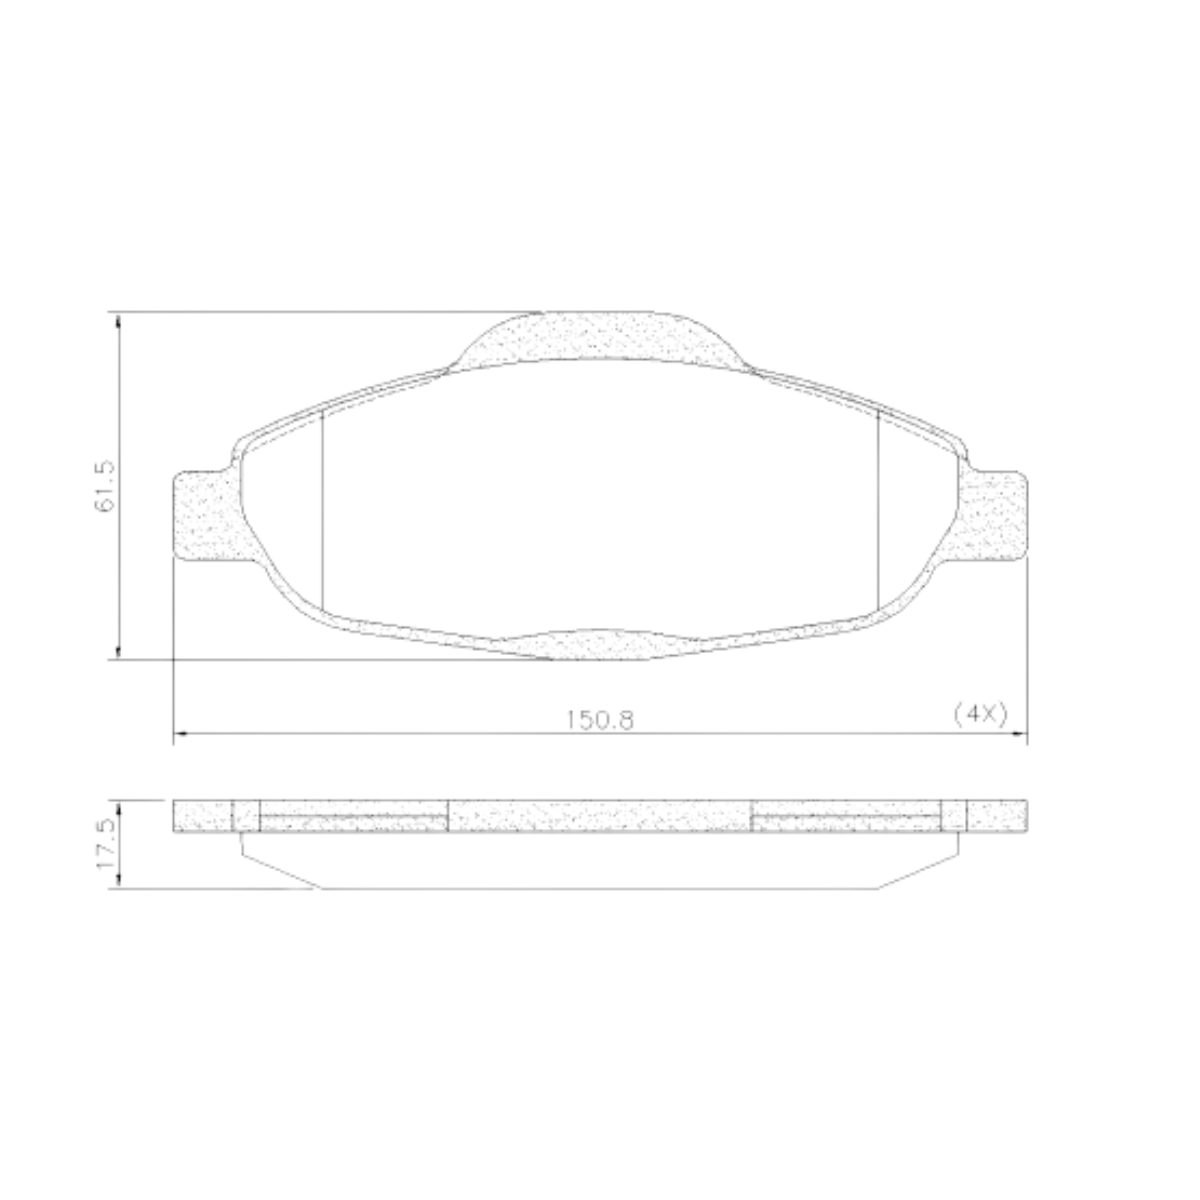 Pastilha Freio Peugeot 308 1.6 16v Allure 2015 Ate 2016 Dianteira Sistema Bosch, Ceramica Fras-le Pd-1470-cmaxx